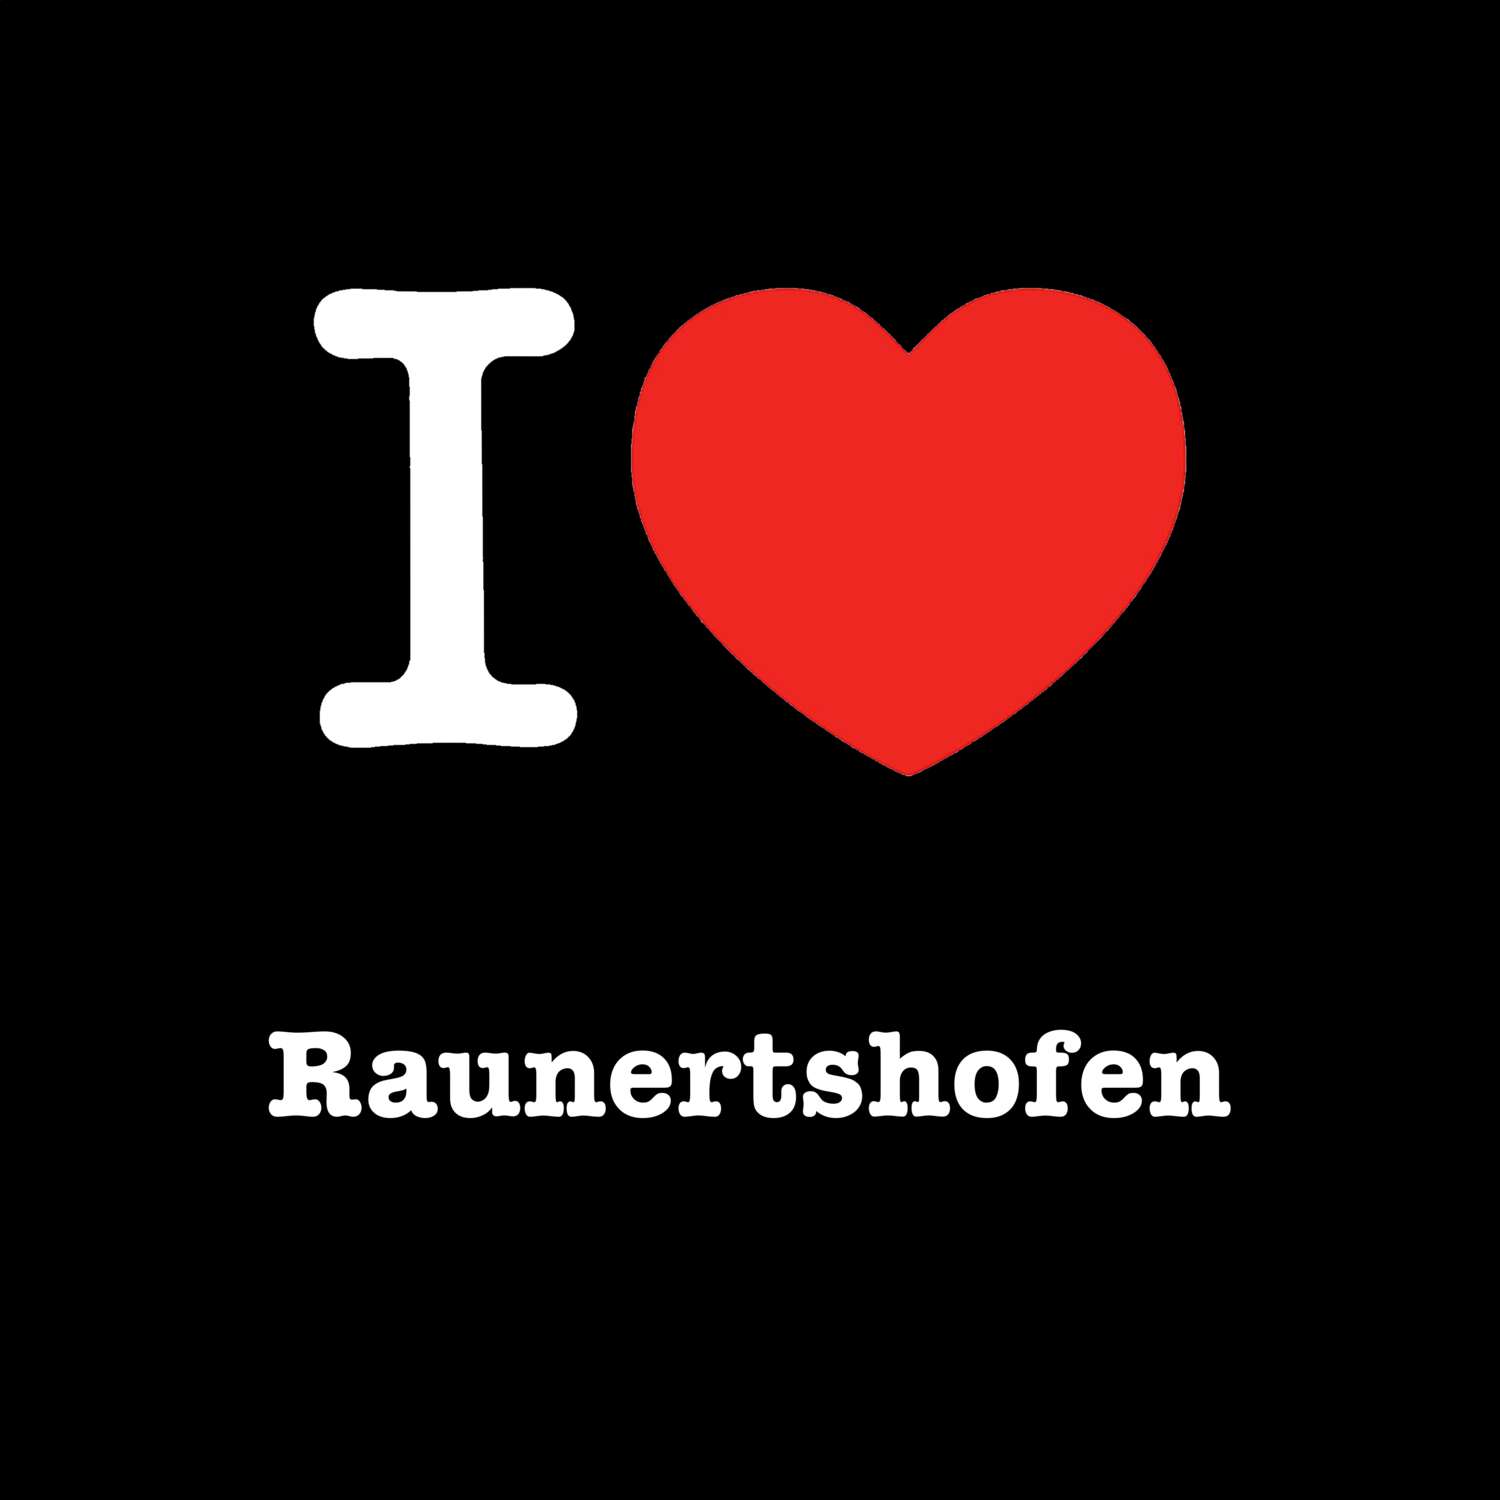 Raunertshofen T-Shirt »I love«